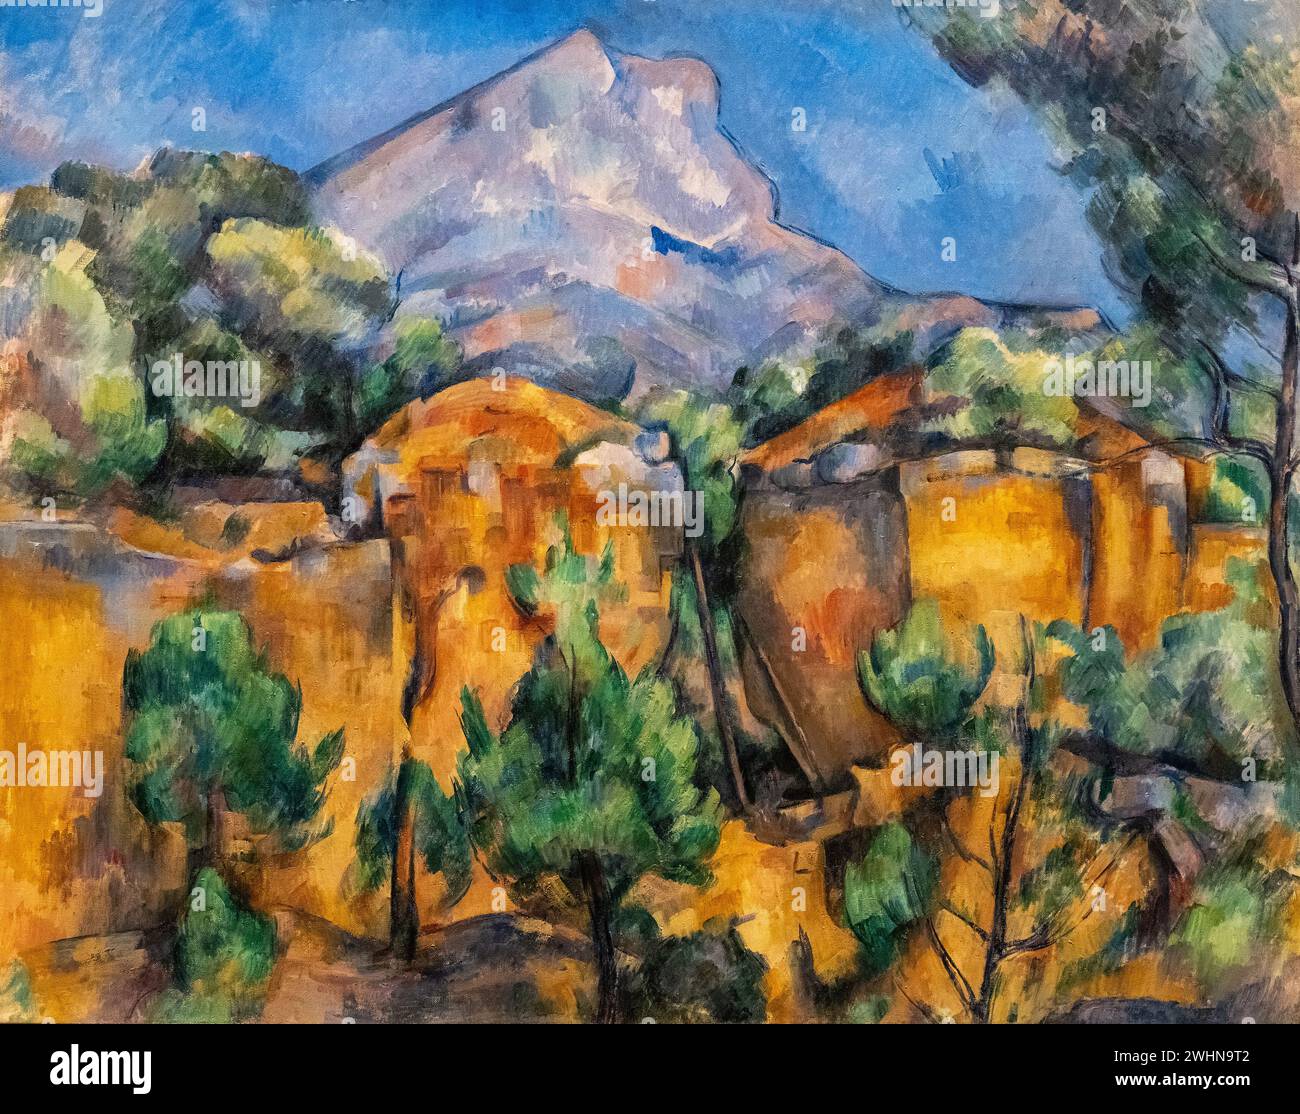 Peinture de Paul Cézanne de 1895 à 99, huile sur toile, intitulée 'Mont Sainte-victoire vu de la carrière Bibemus' exposée au Musée de Baltimore Banque D'Images